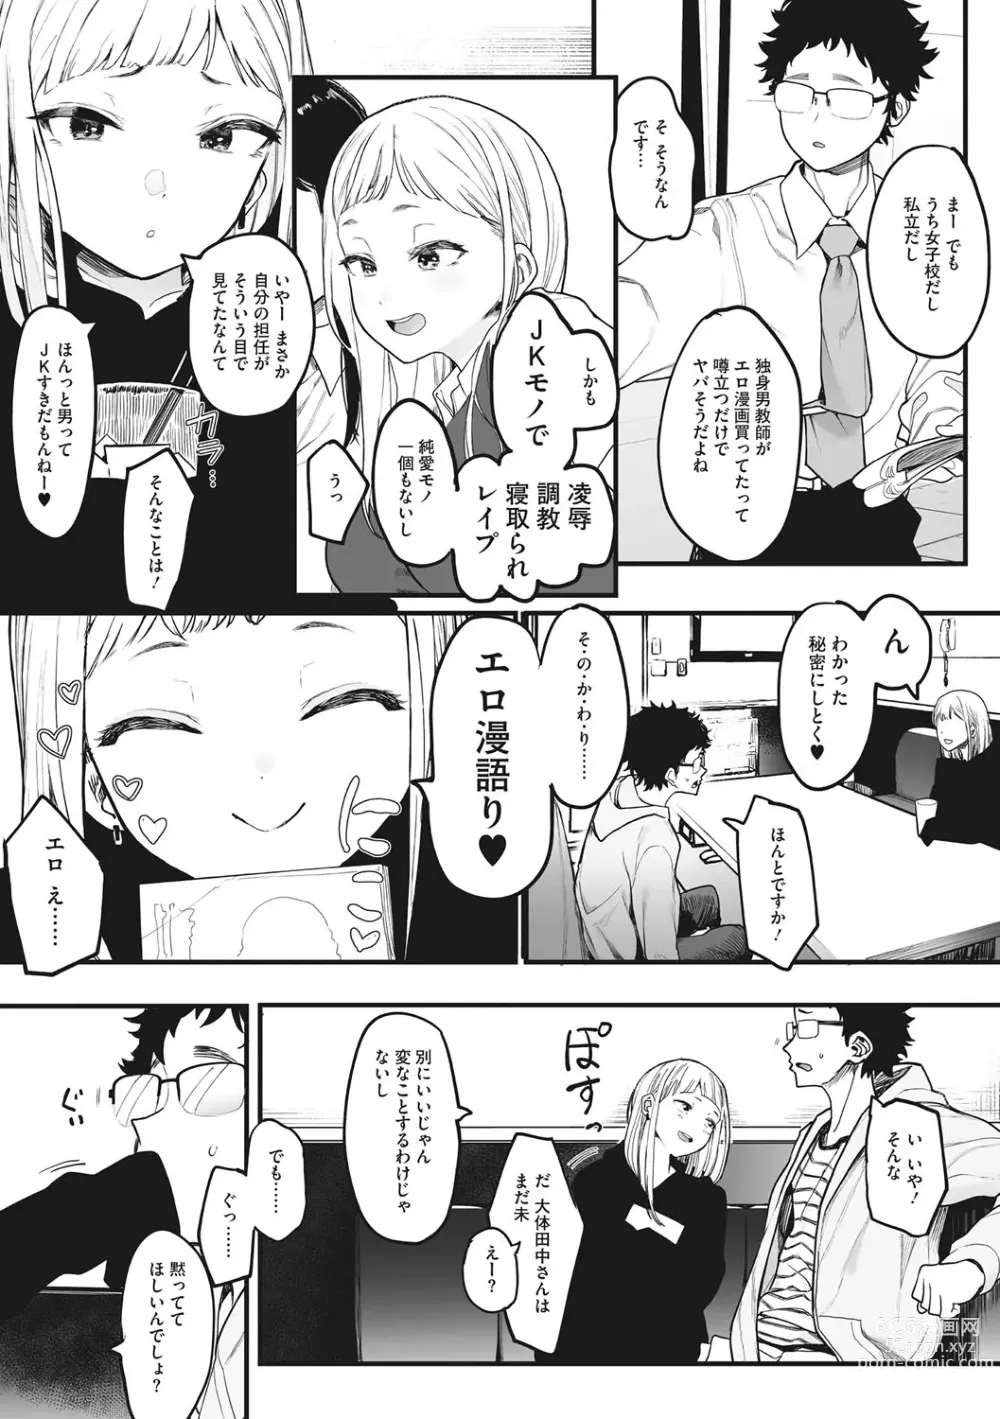 Page 6 of manga Eightman sensei no okagede kanojo ga dekimashita!